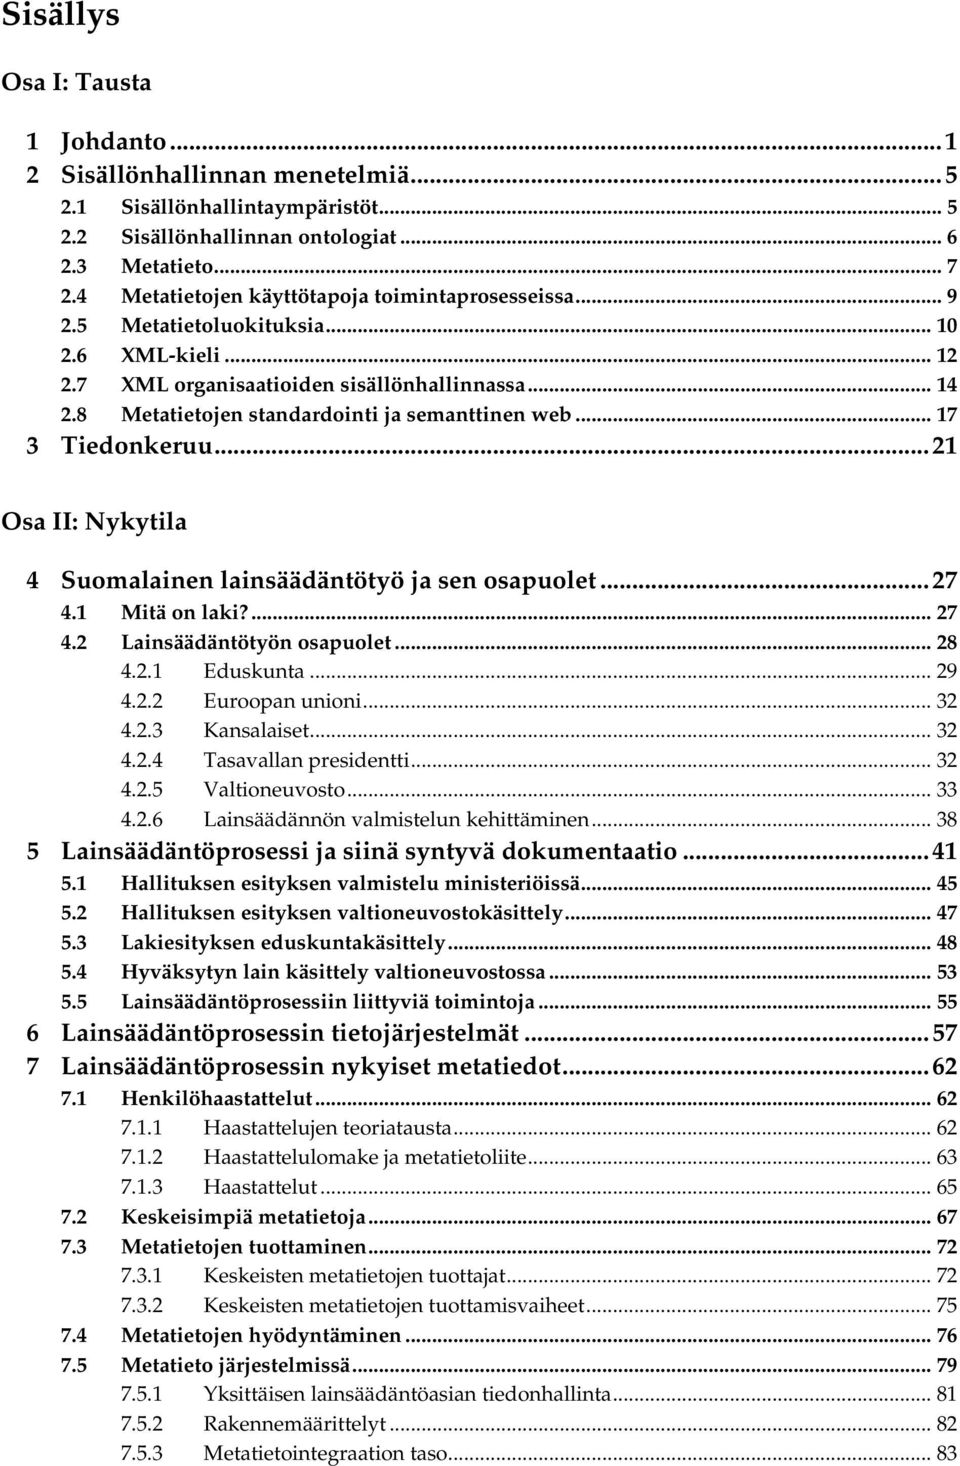 8 Metatietojen standardointi ja semanttinen web... 17 3 Tiedonkeruu...21 Osa II: Nykytila 4 Suomalainen lainsäädäntötyö ja sen osapuolet...27 4.1 Mitä on laki?... 27 4.2 Lainsäädäntötyön osapuolet.